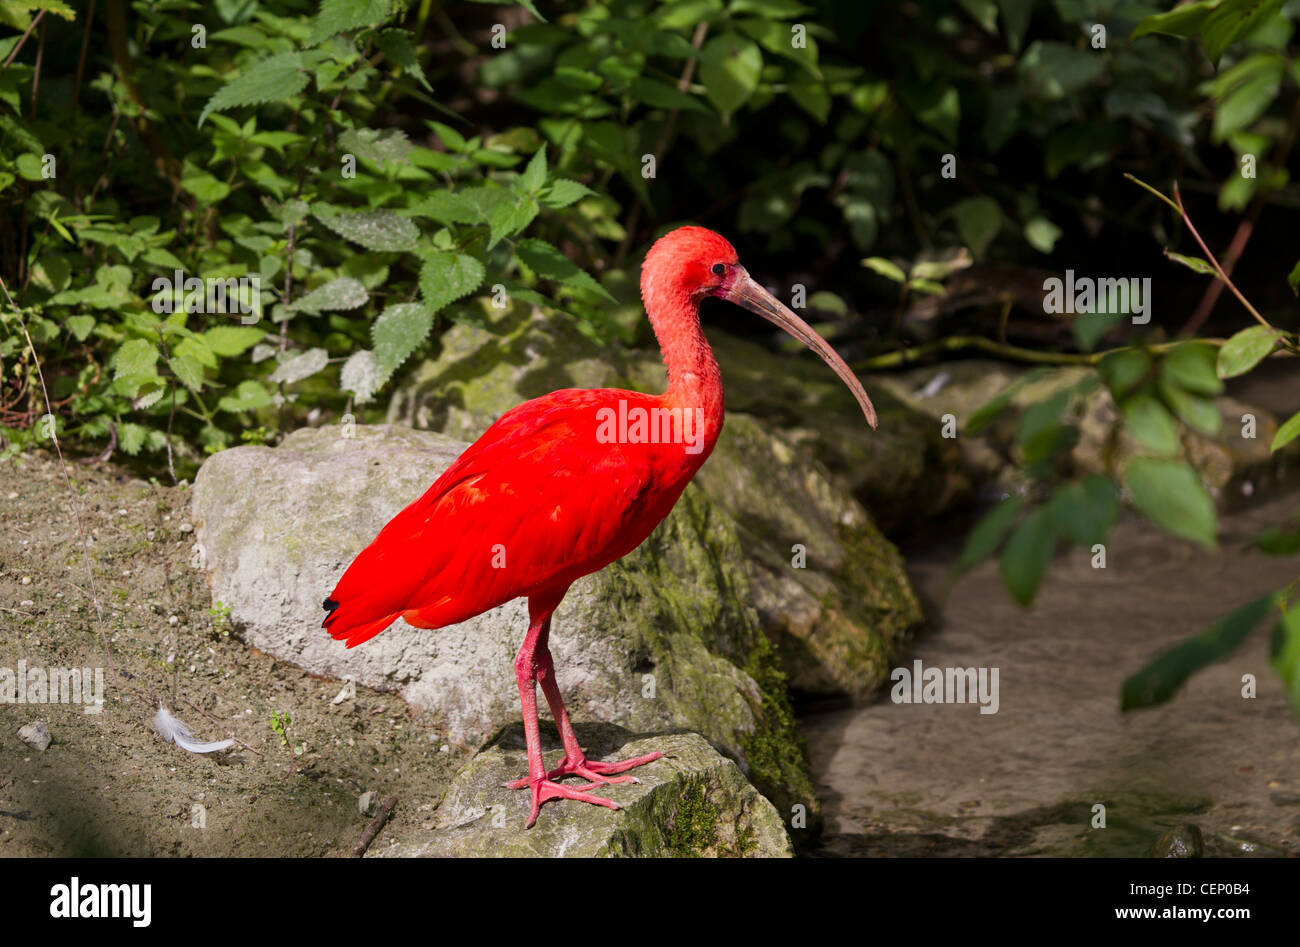 Roter sichler, eudocimus ruber, scarlet ibis Foto Stock